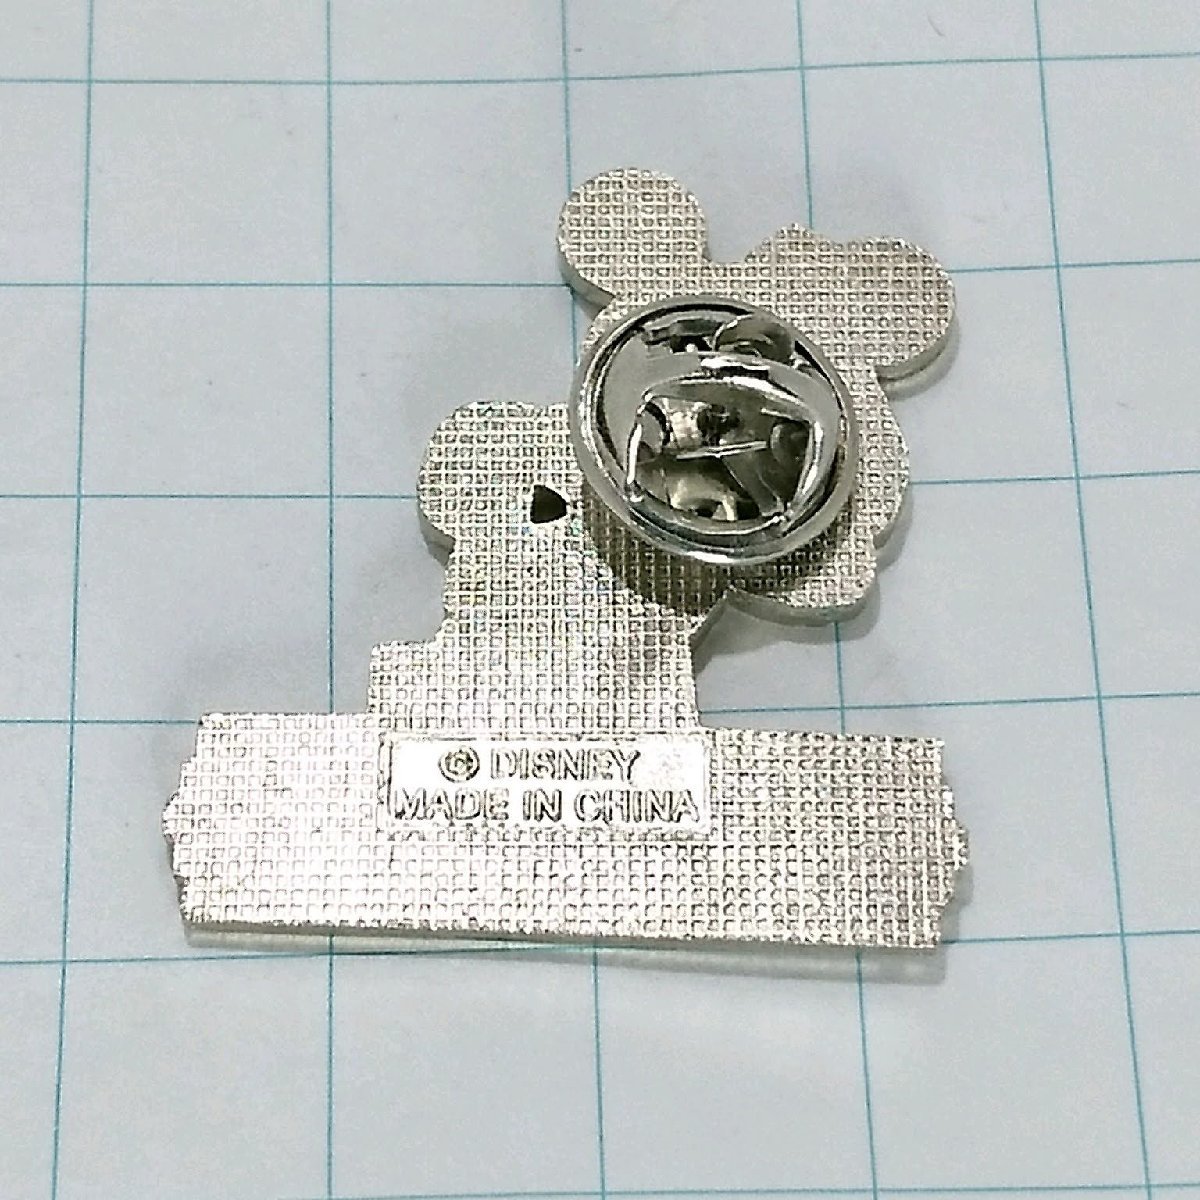  free shipping ) Mickey Mouse Ambassador hotel Disney character pin badge PINS pin zA19274